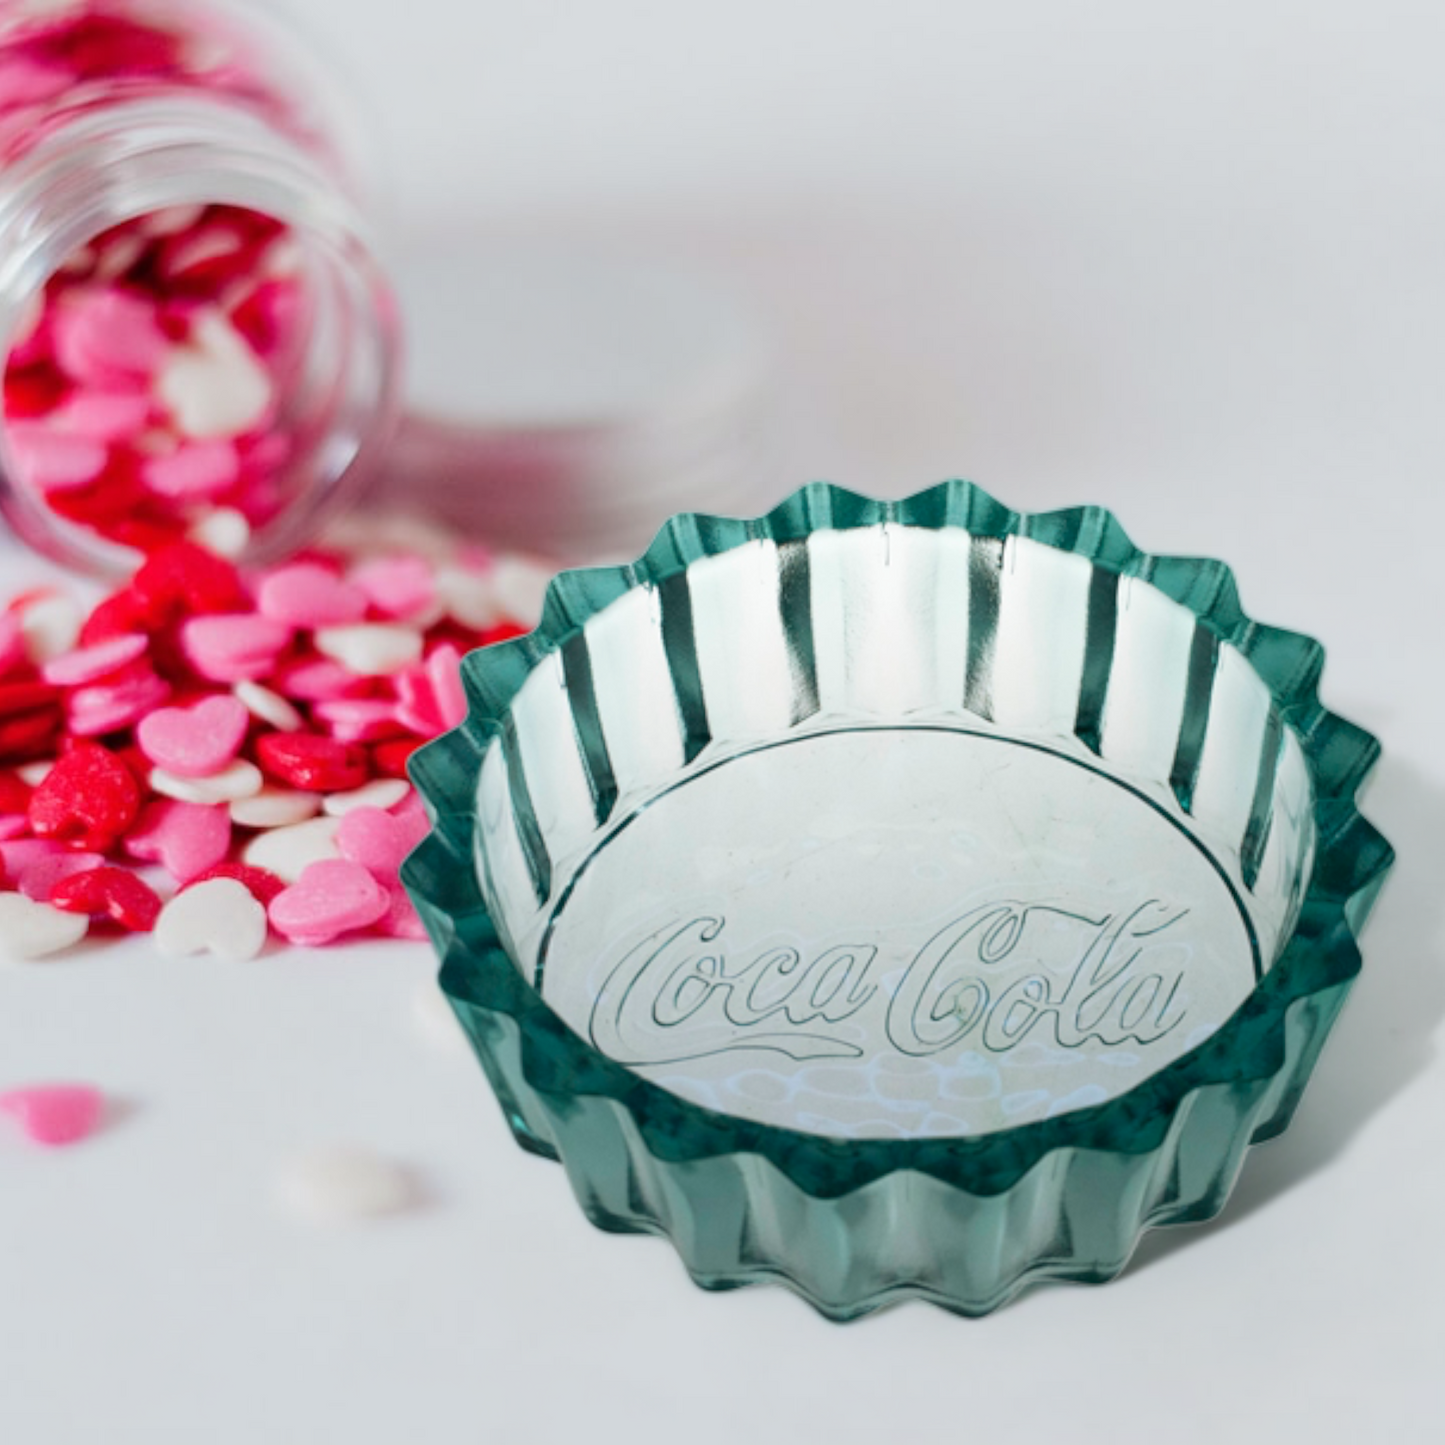 Coca Cola® Glasschale für Müsli, Candy, Salat - Ø 25 cm Glas-Schüssel